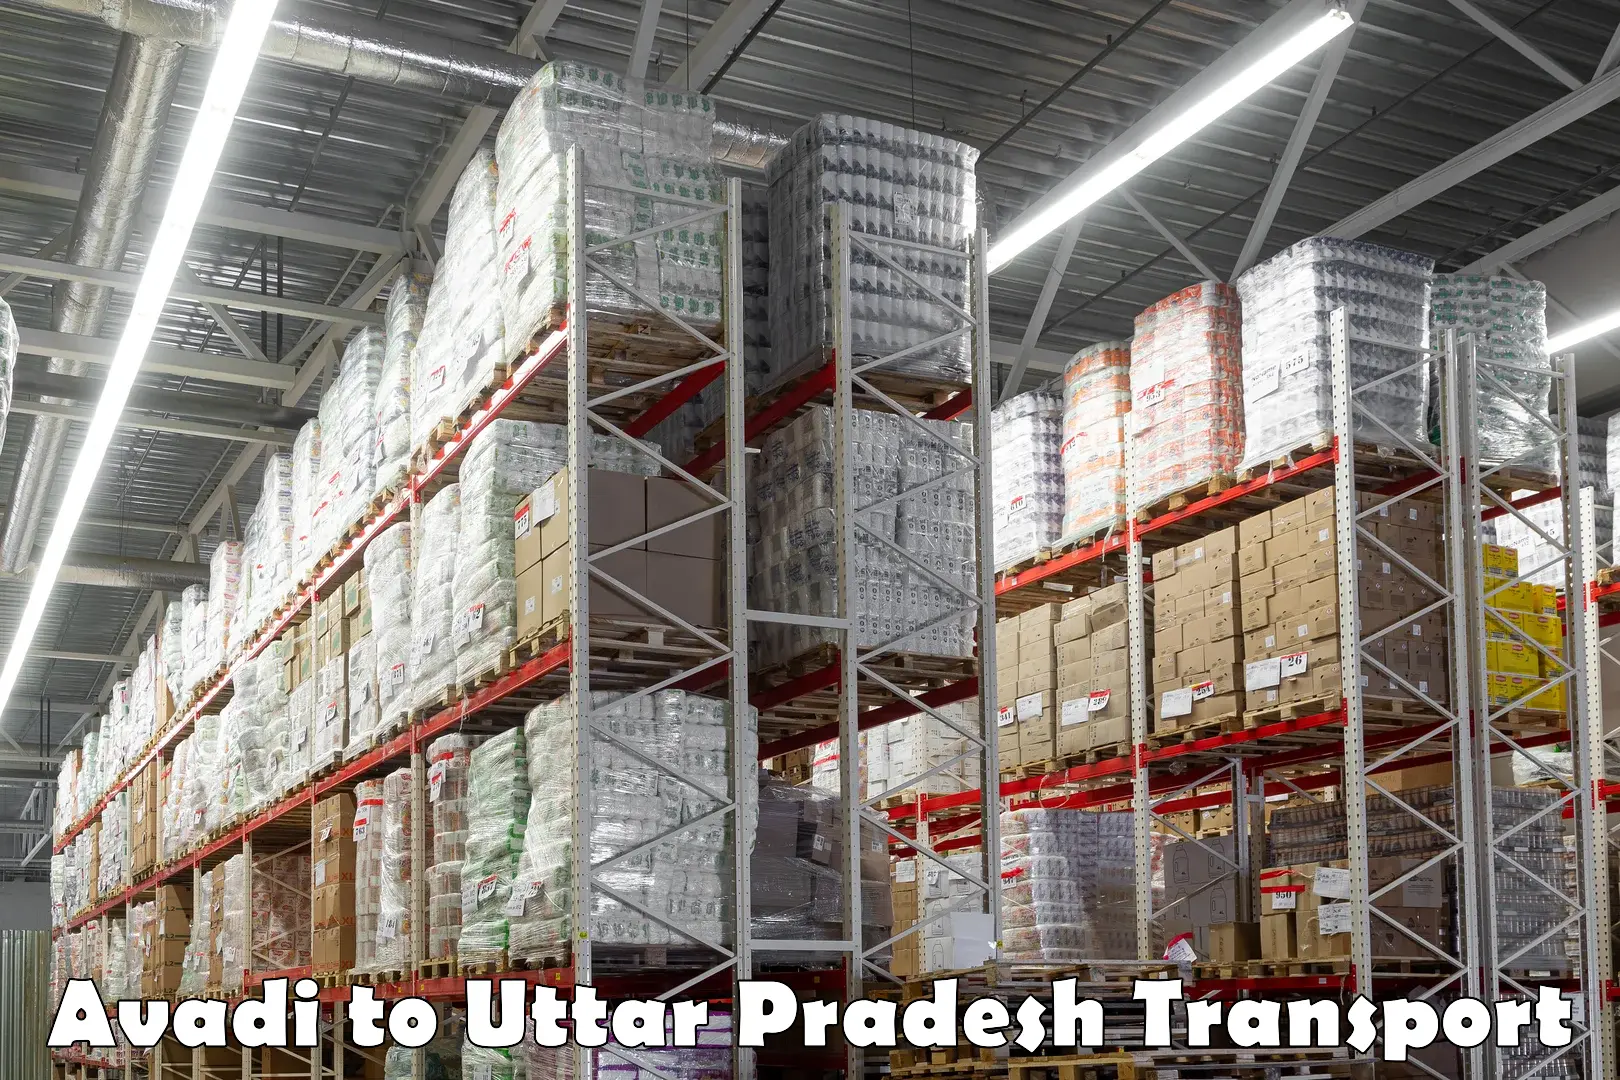 Parcel transport services Avadi to Uttar Pradesh